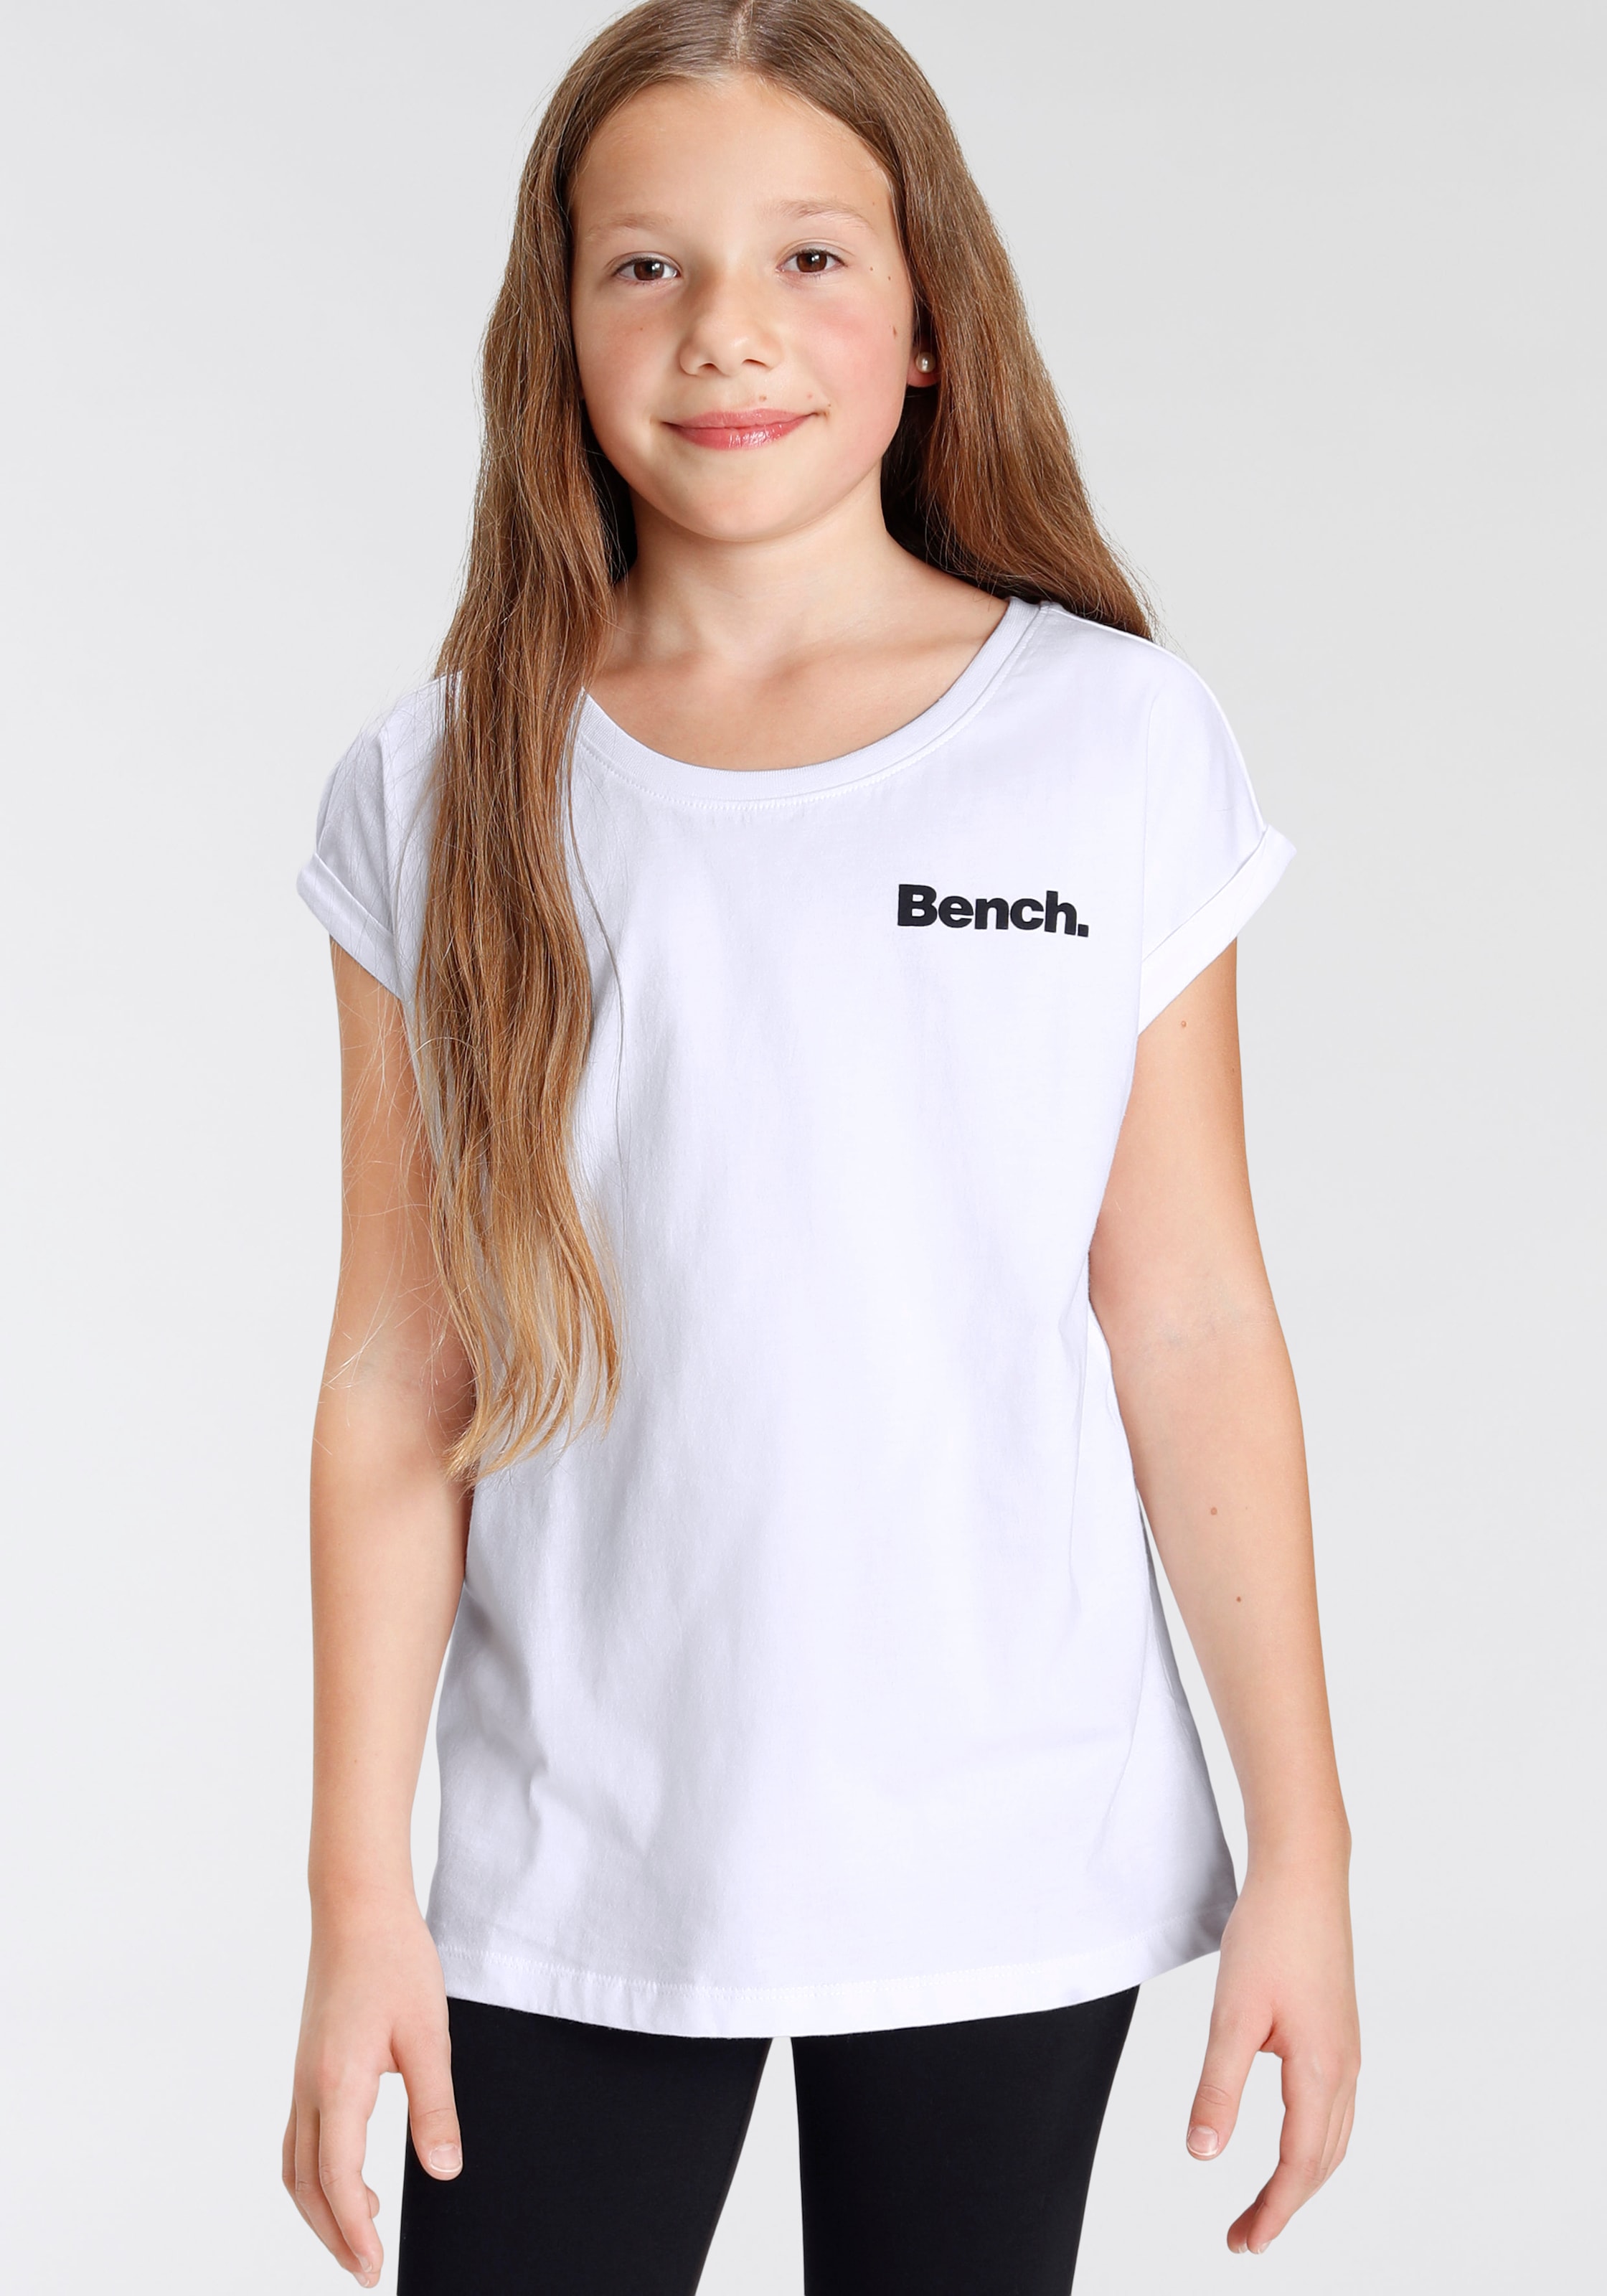 T-Shirt, mit Bench. bei Fotodruck ♕